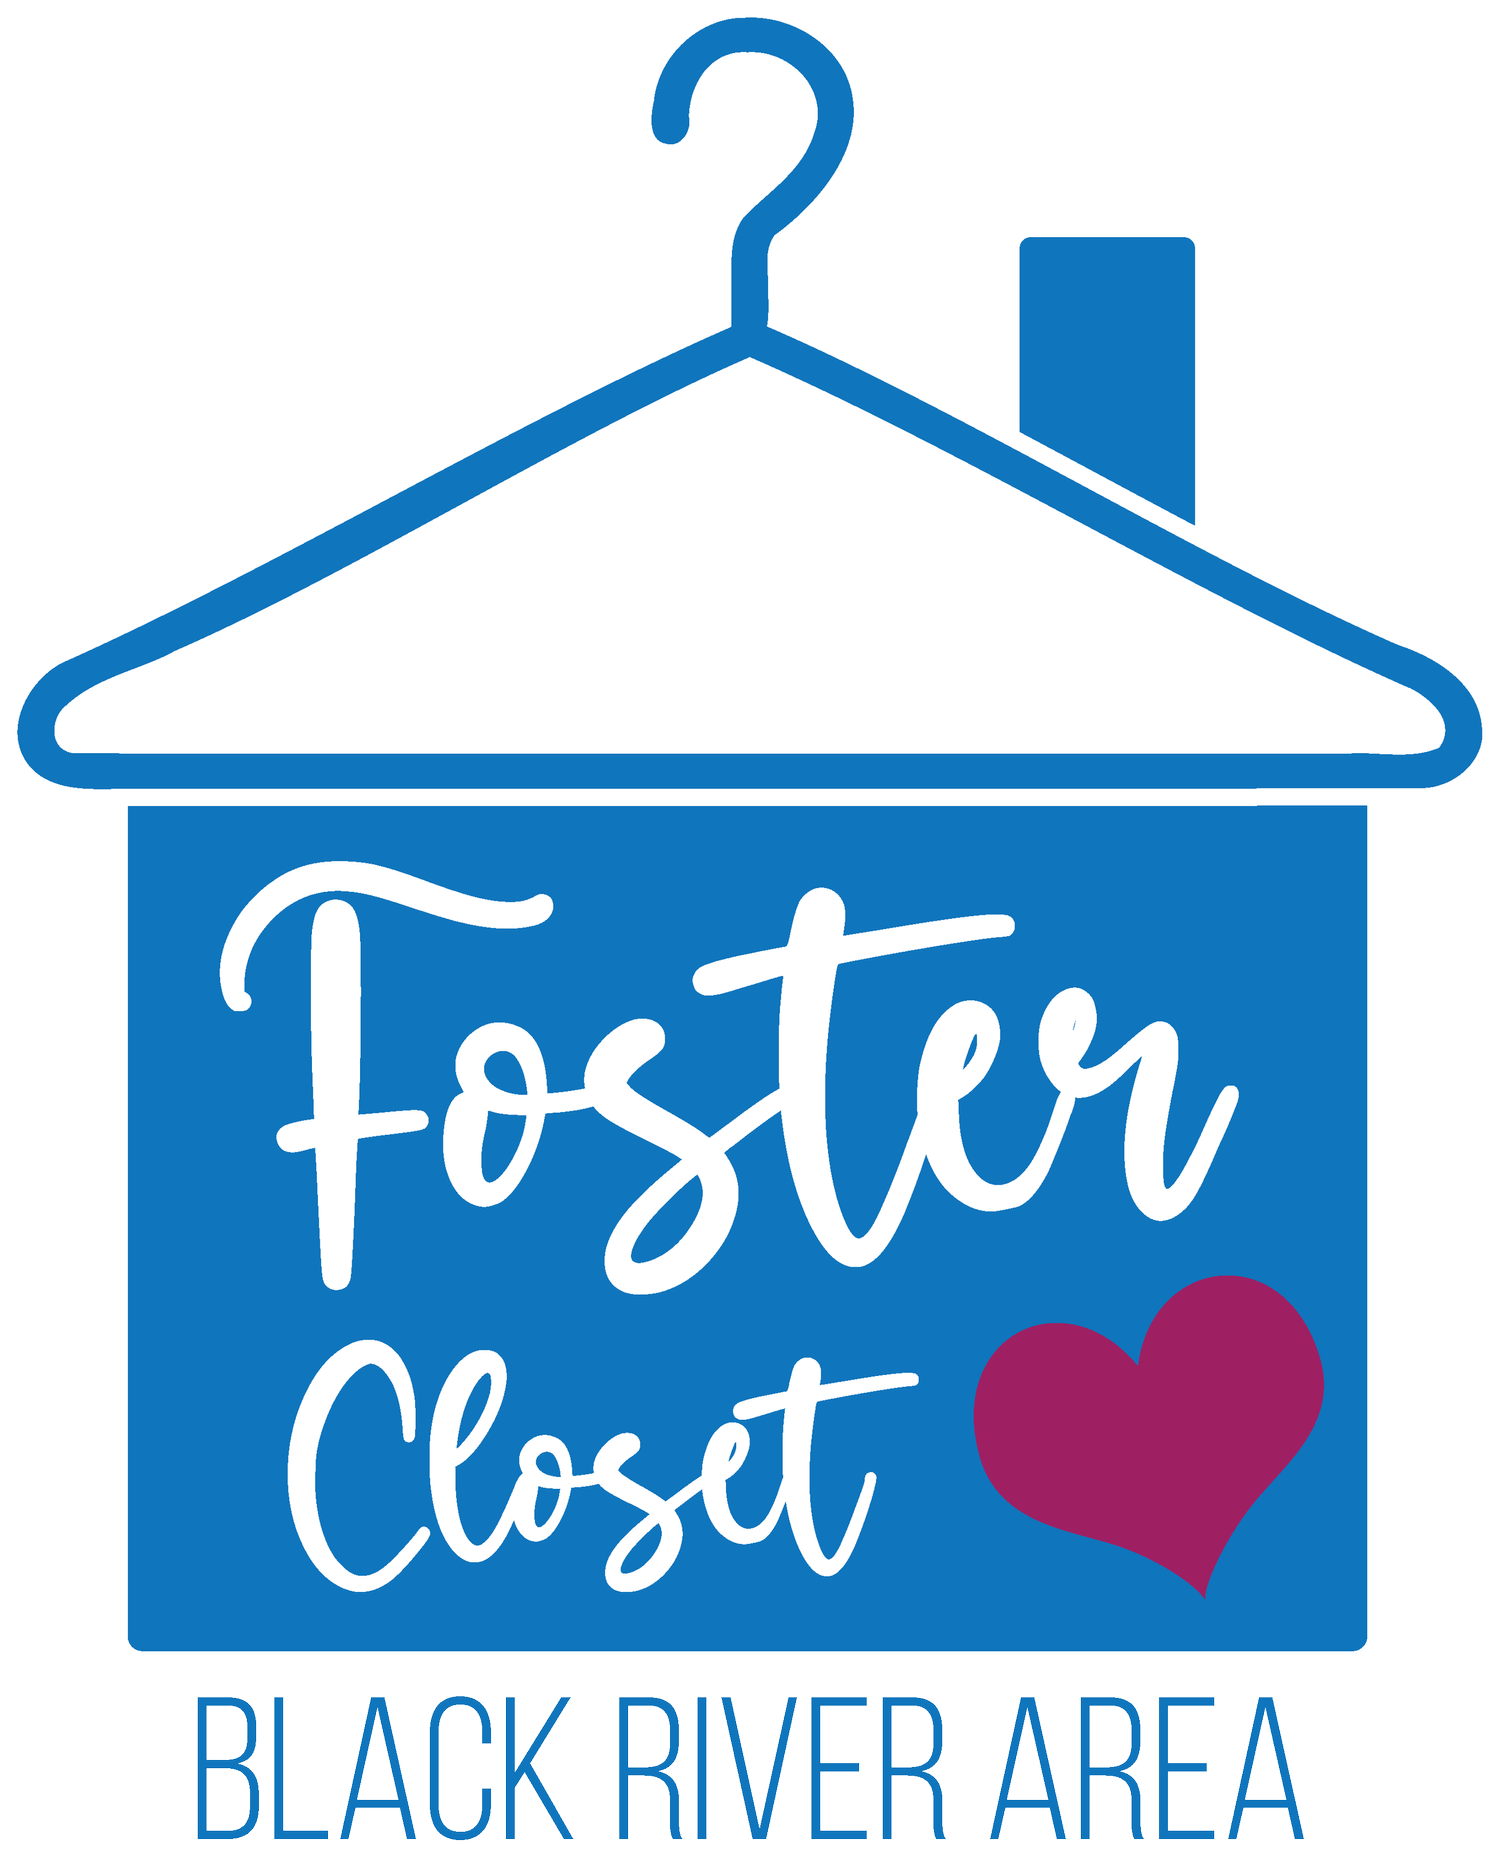 Black River Area Foster Closet